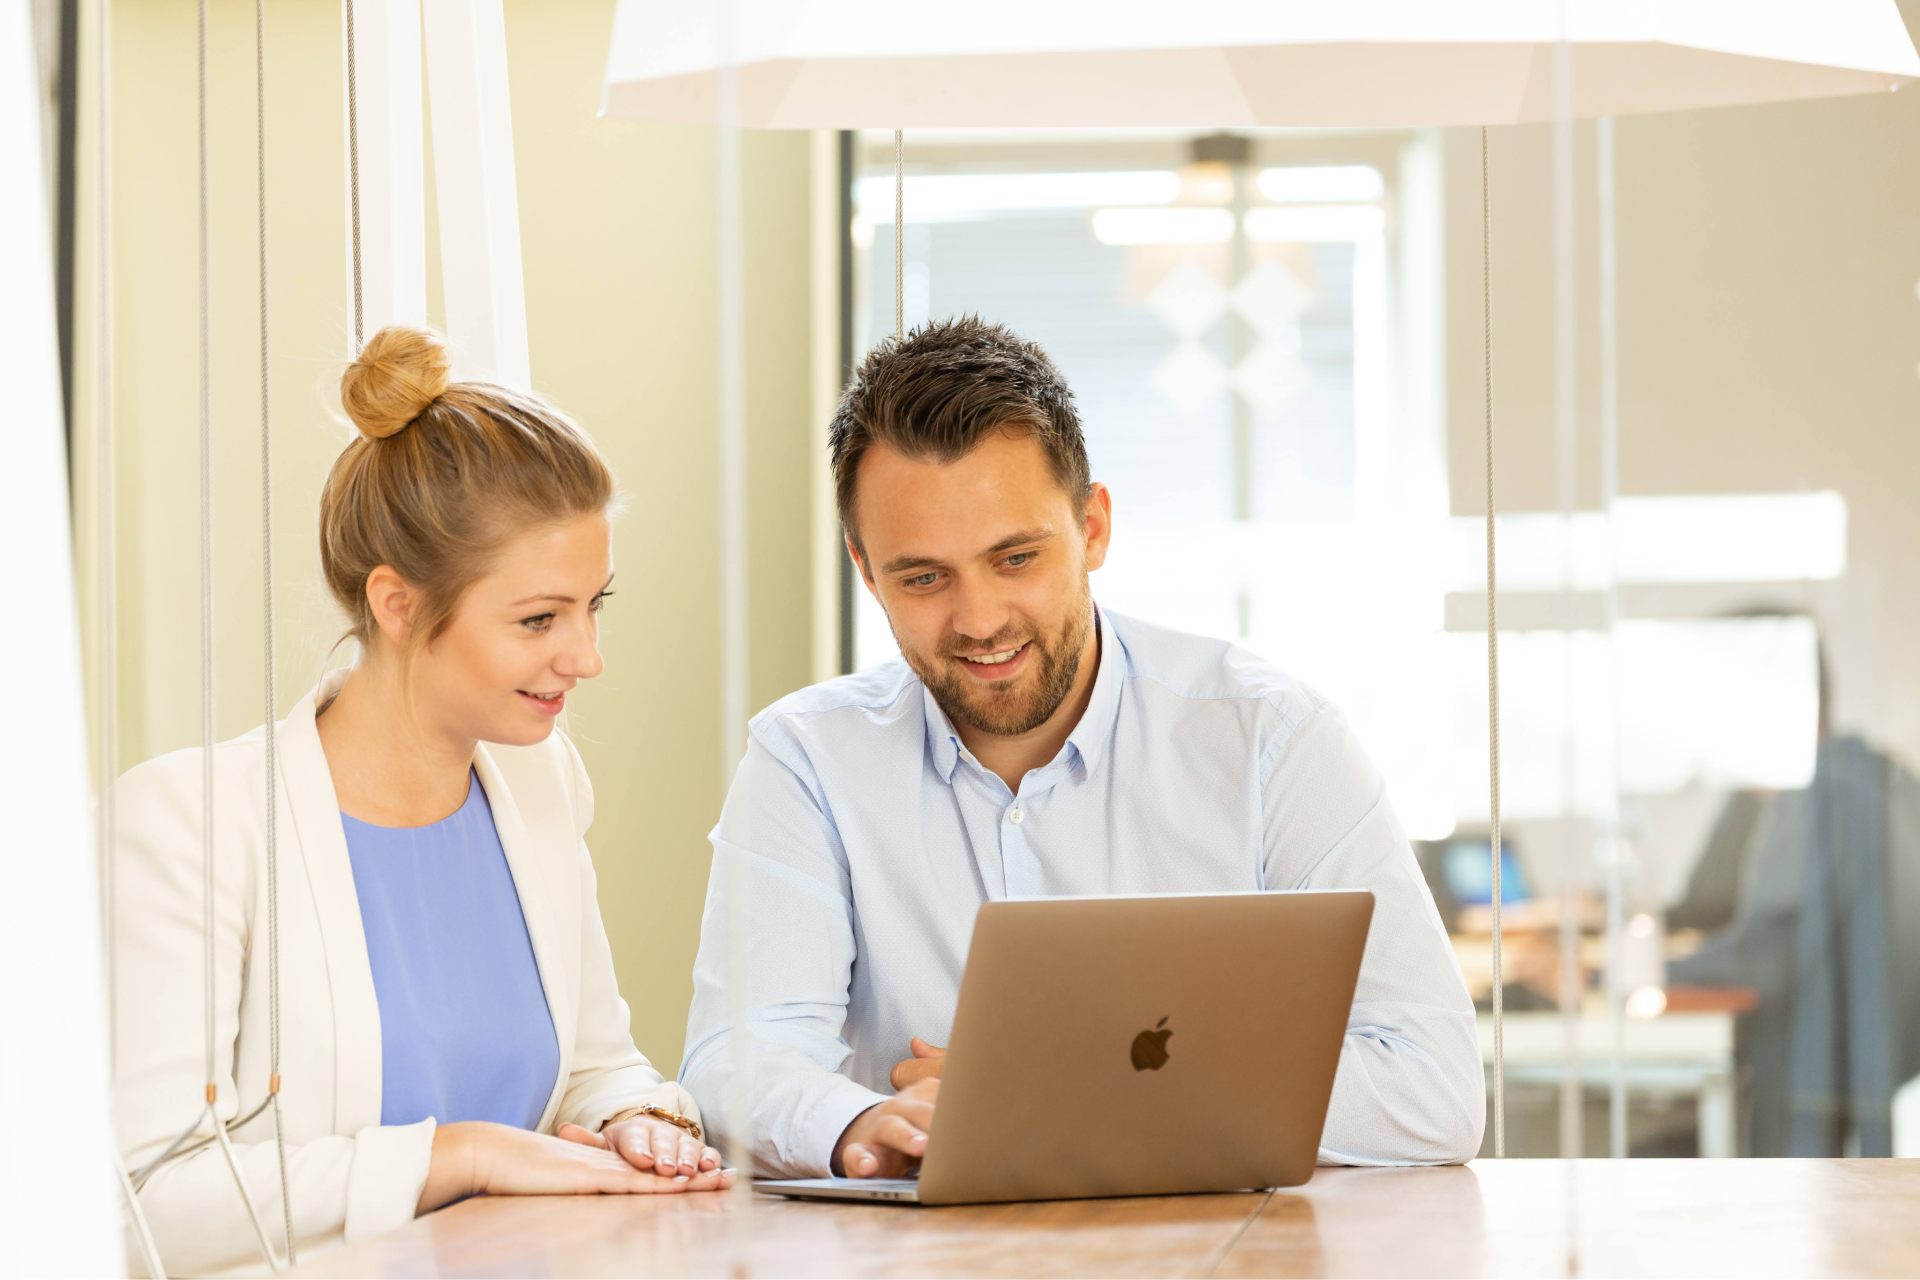 Mann und Frau, Mitarbeiter von Sunzinet, schauen lächelnd gemeinsam im Büro auf Daten am Laptop